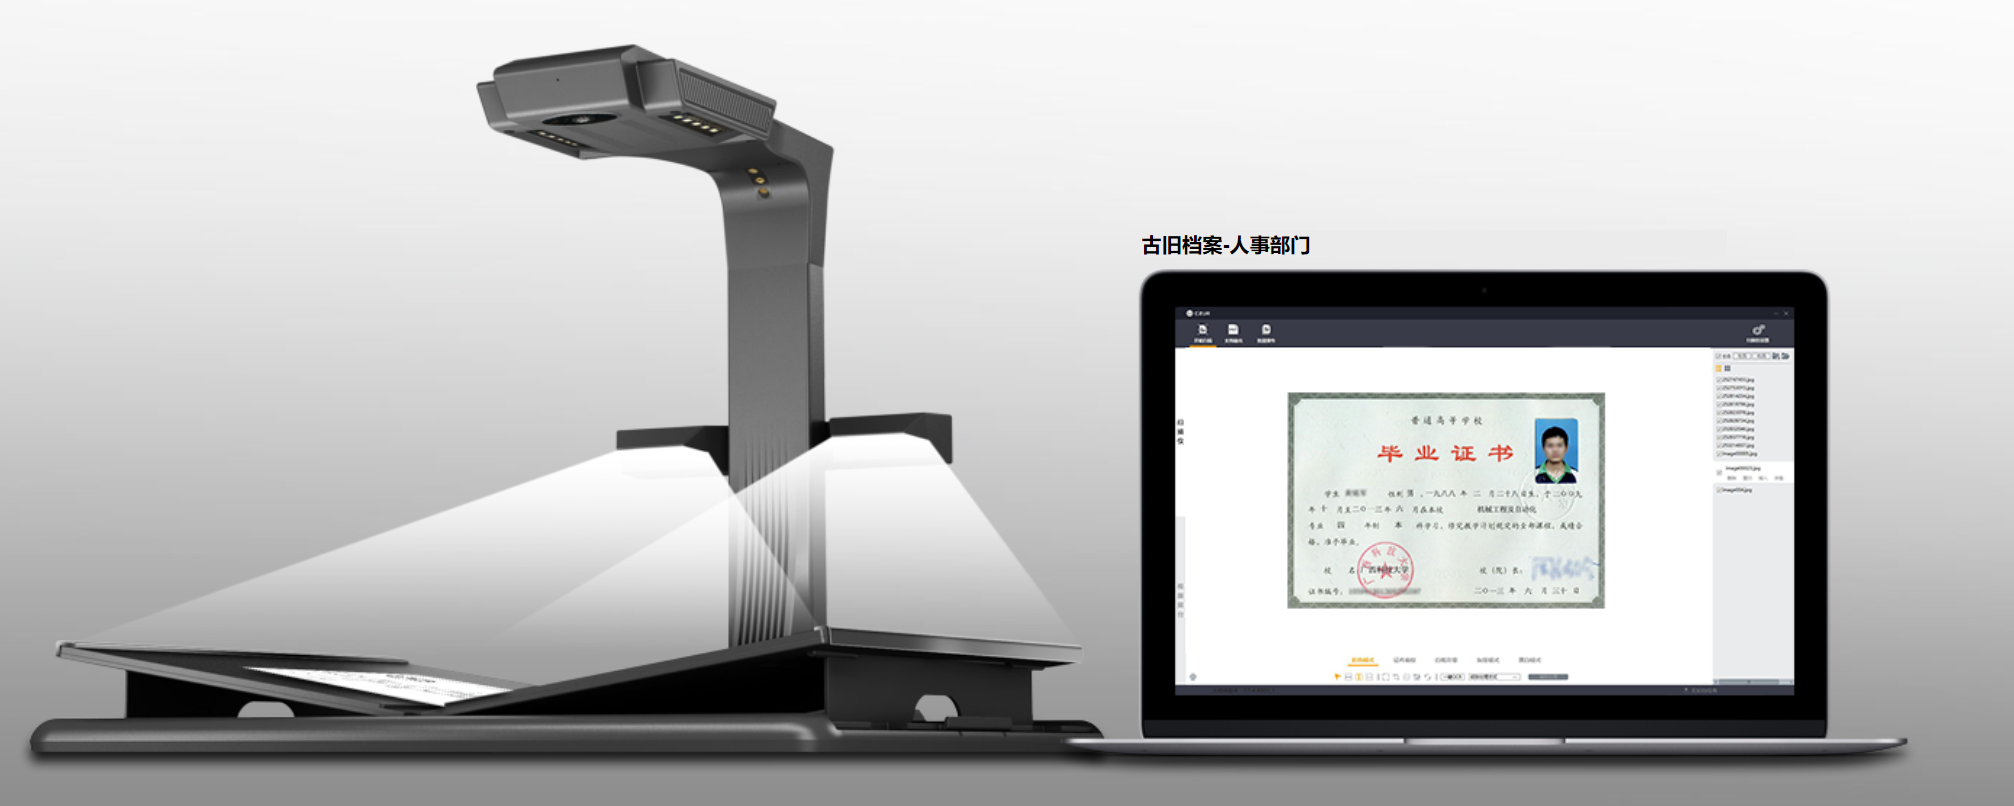 富士通重磅推出fi-7140/fi-7240扫描仪，打造超值商务扫描体验 - 富士通中国